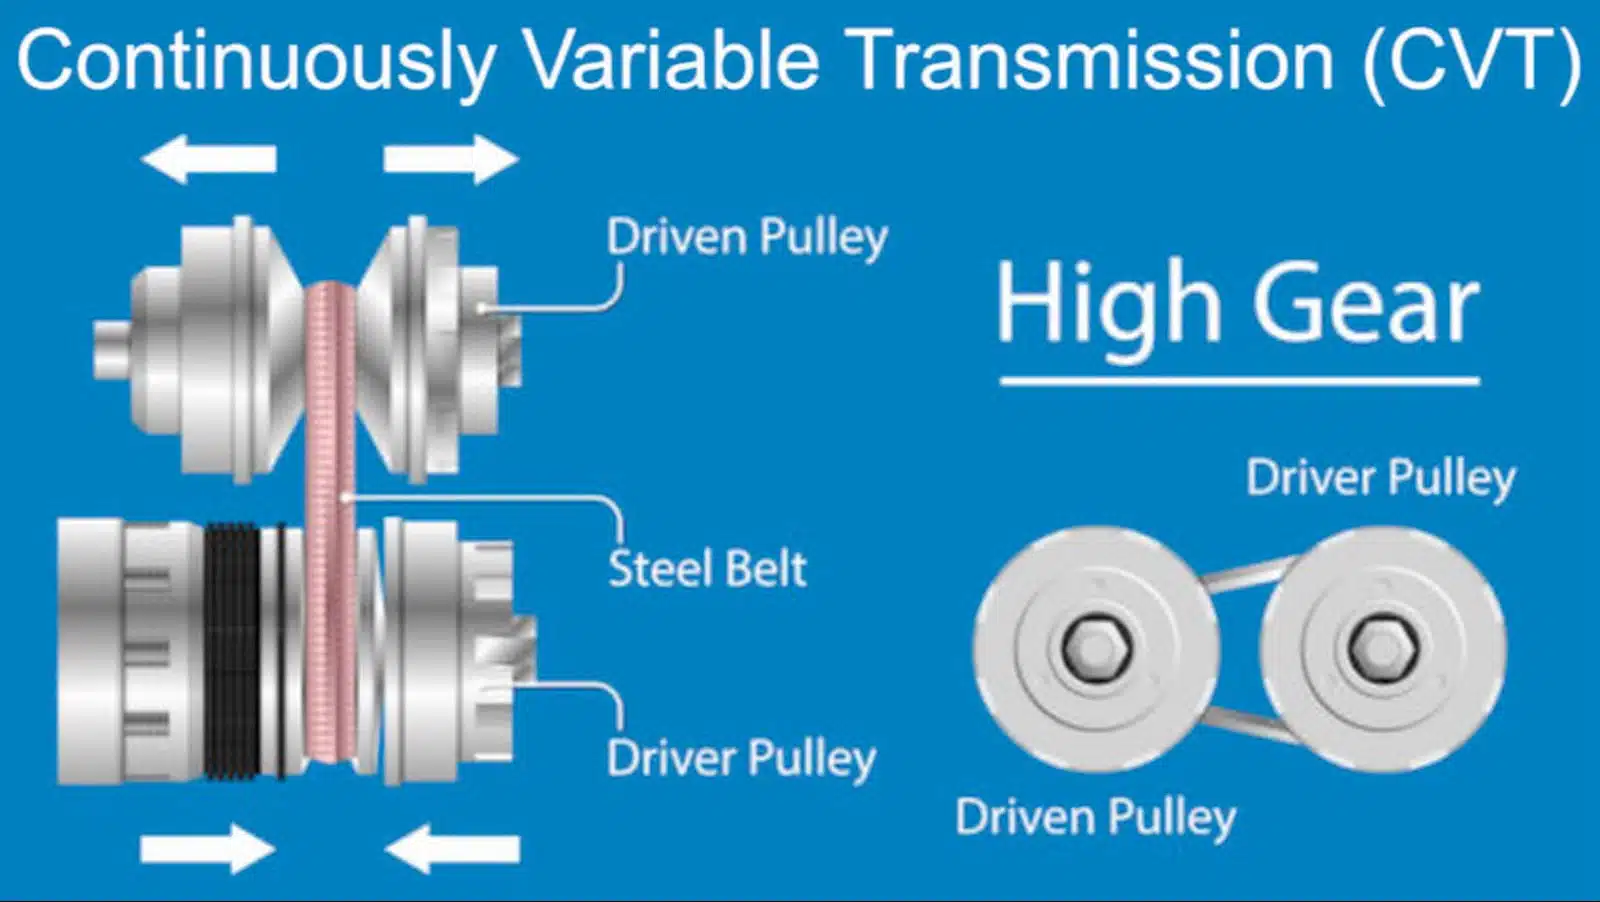 CVT transmission diagram - high gear